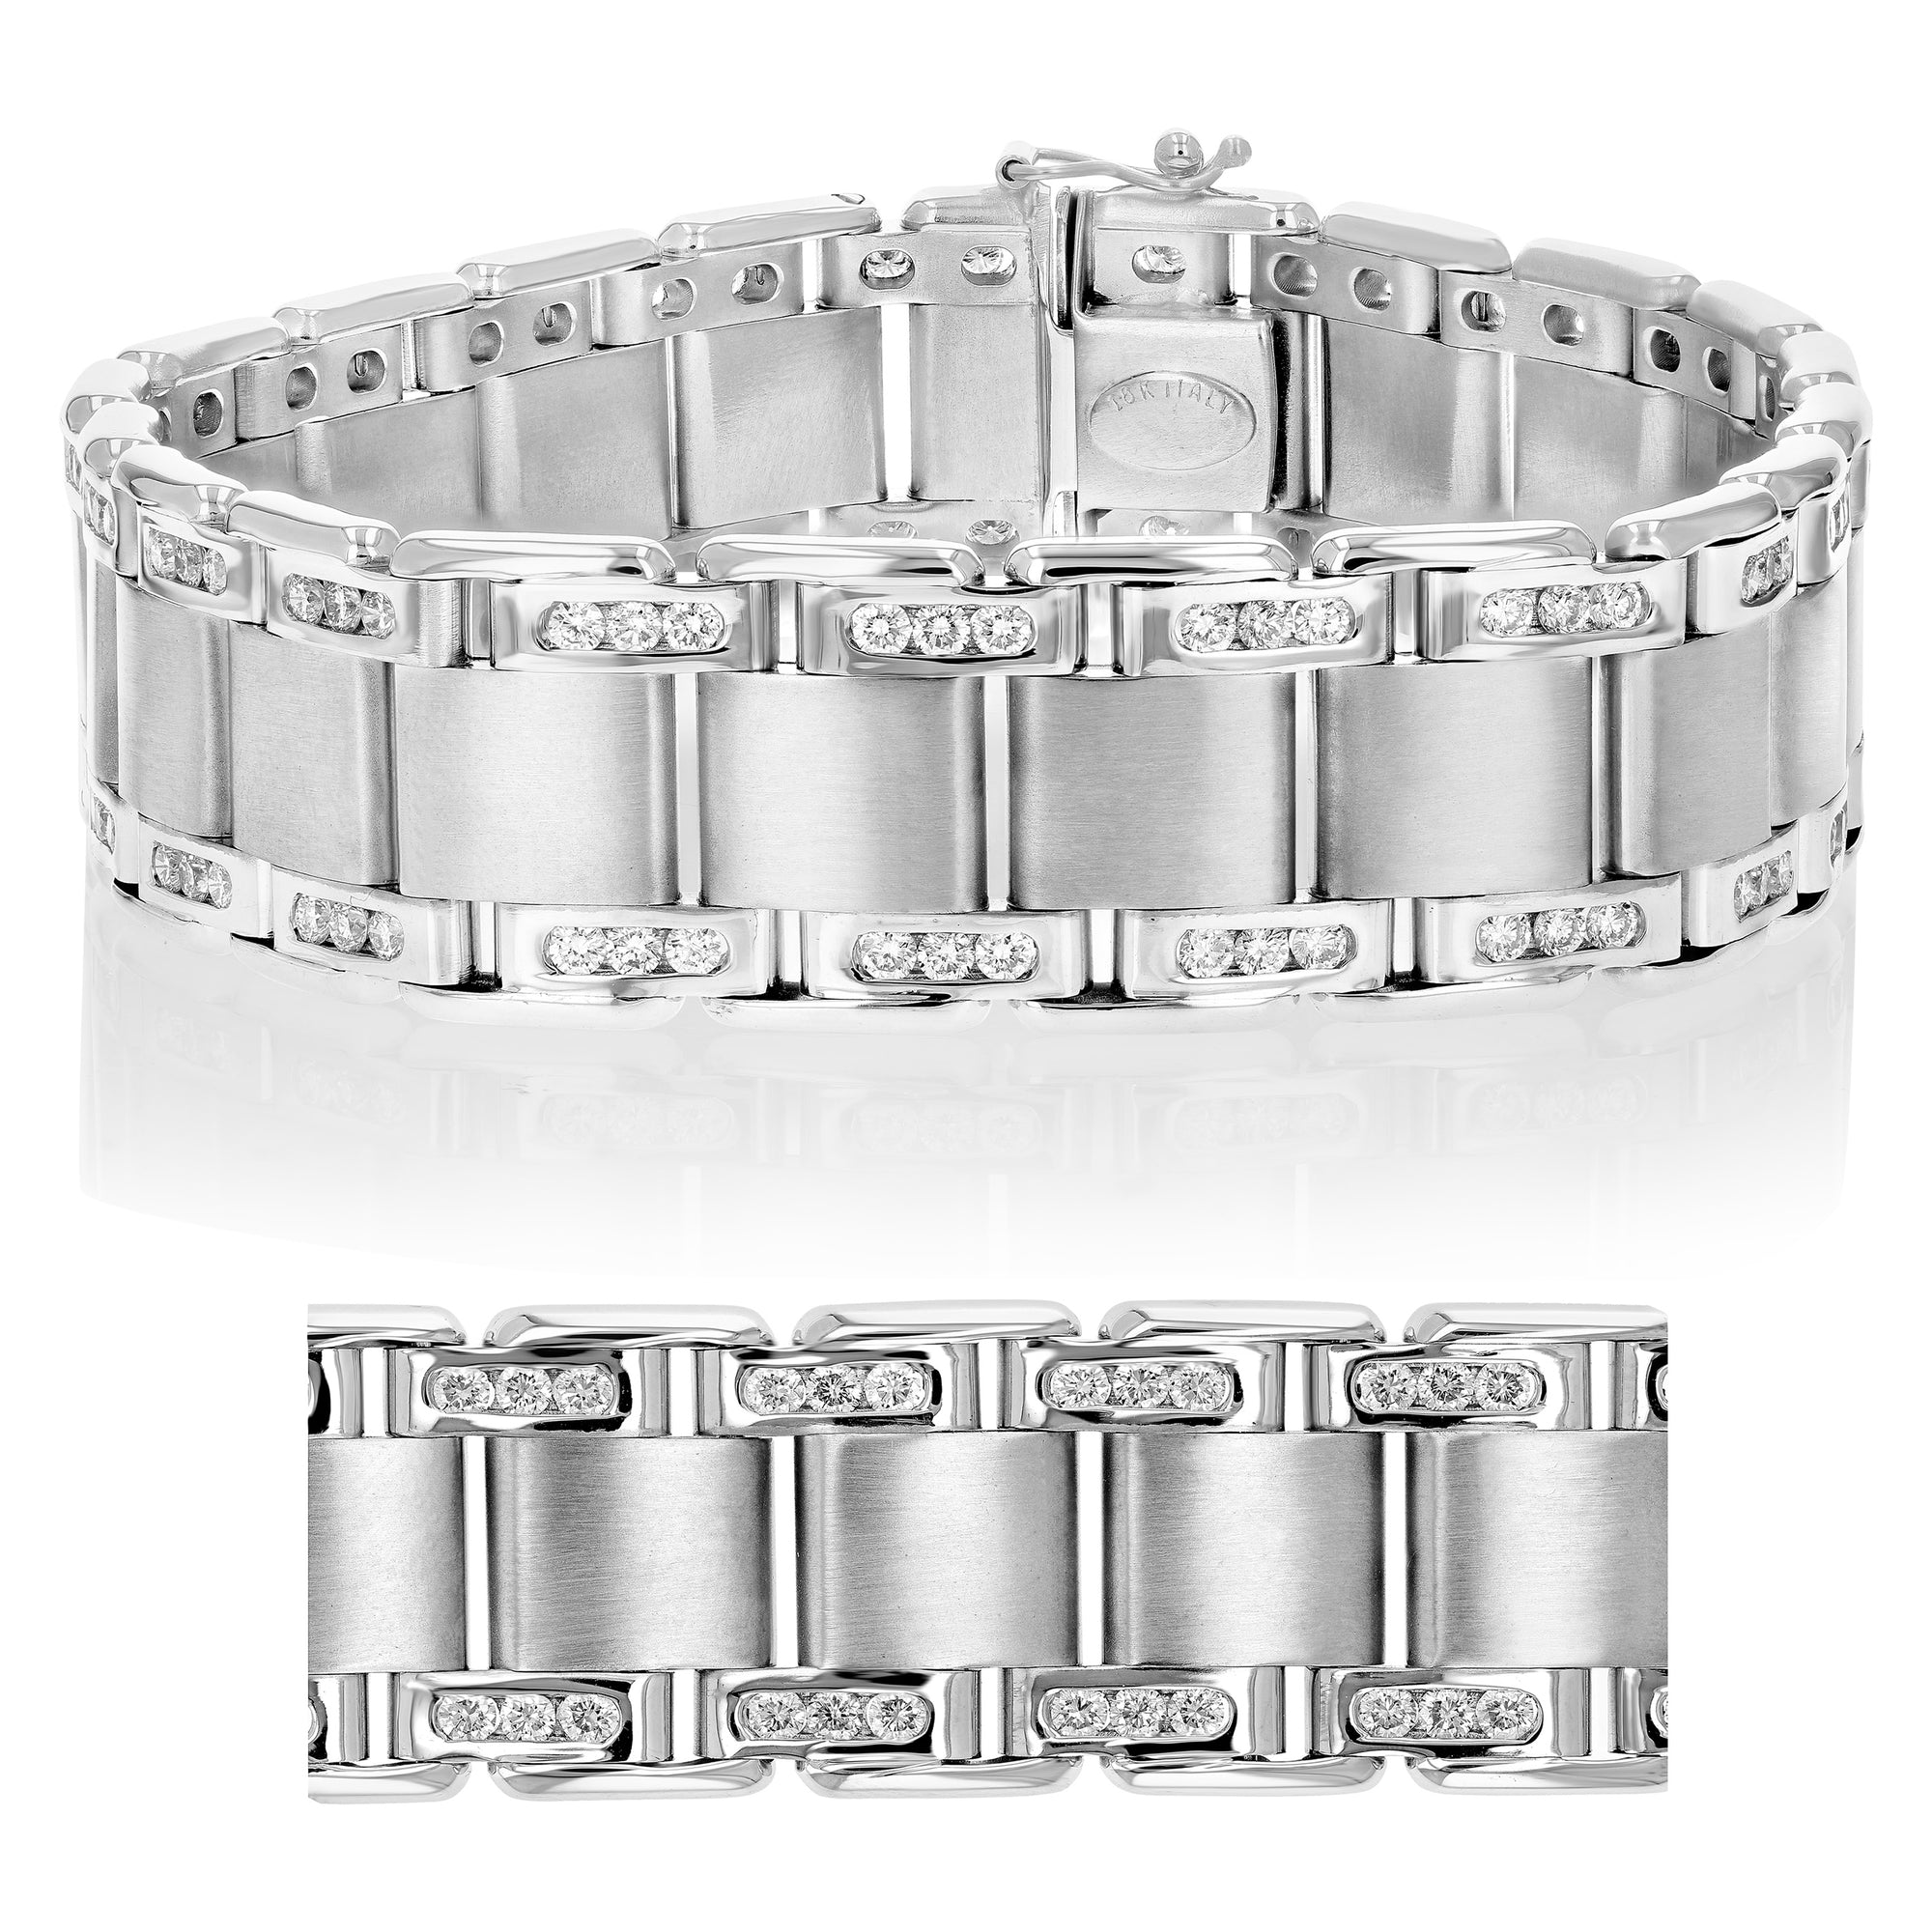 3.50 cttw Men's Diamond Bracelet Italian 18K White Gold VS2-SI1 Clarity 72 Grams